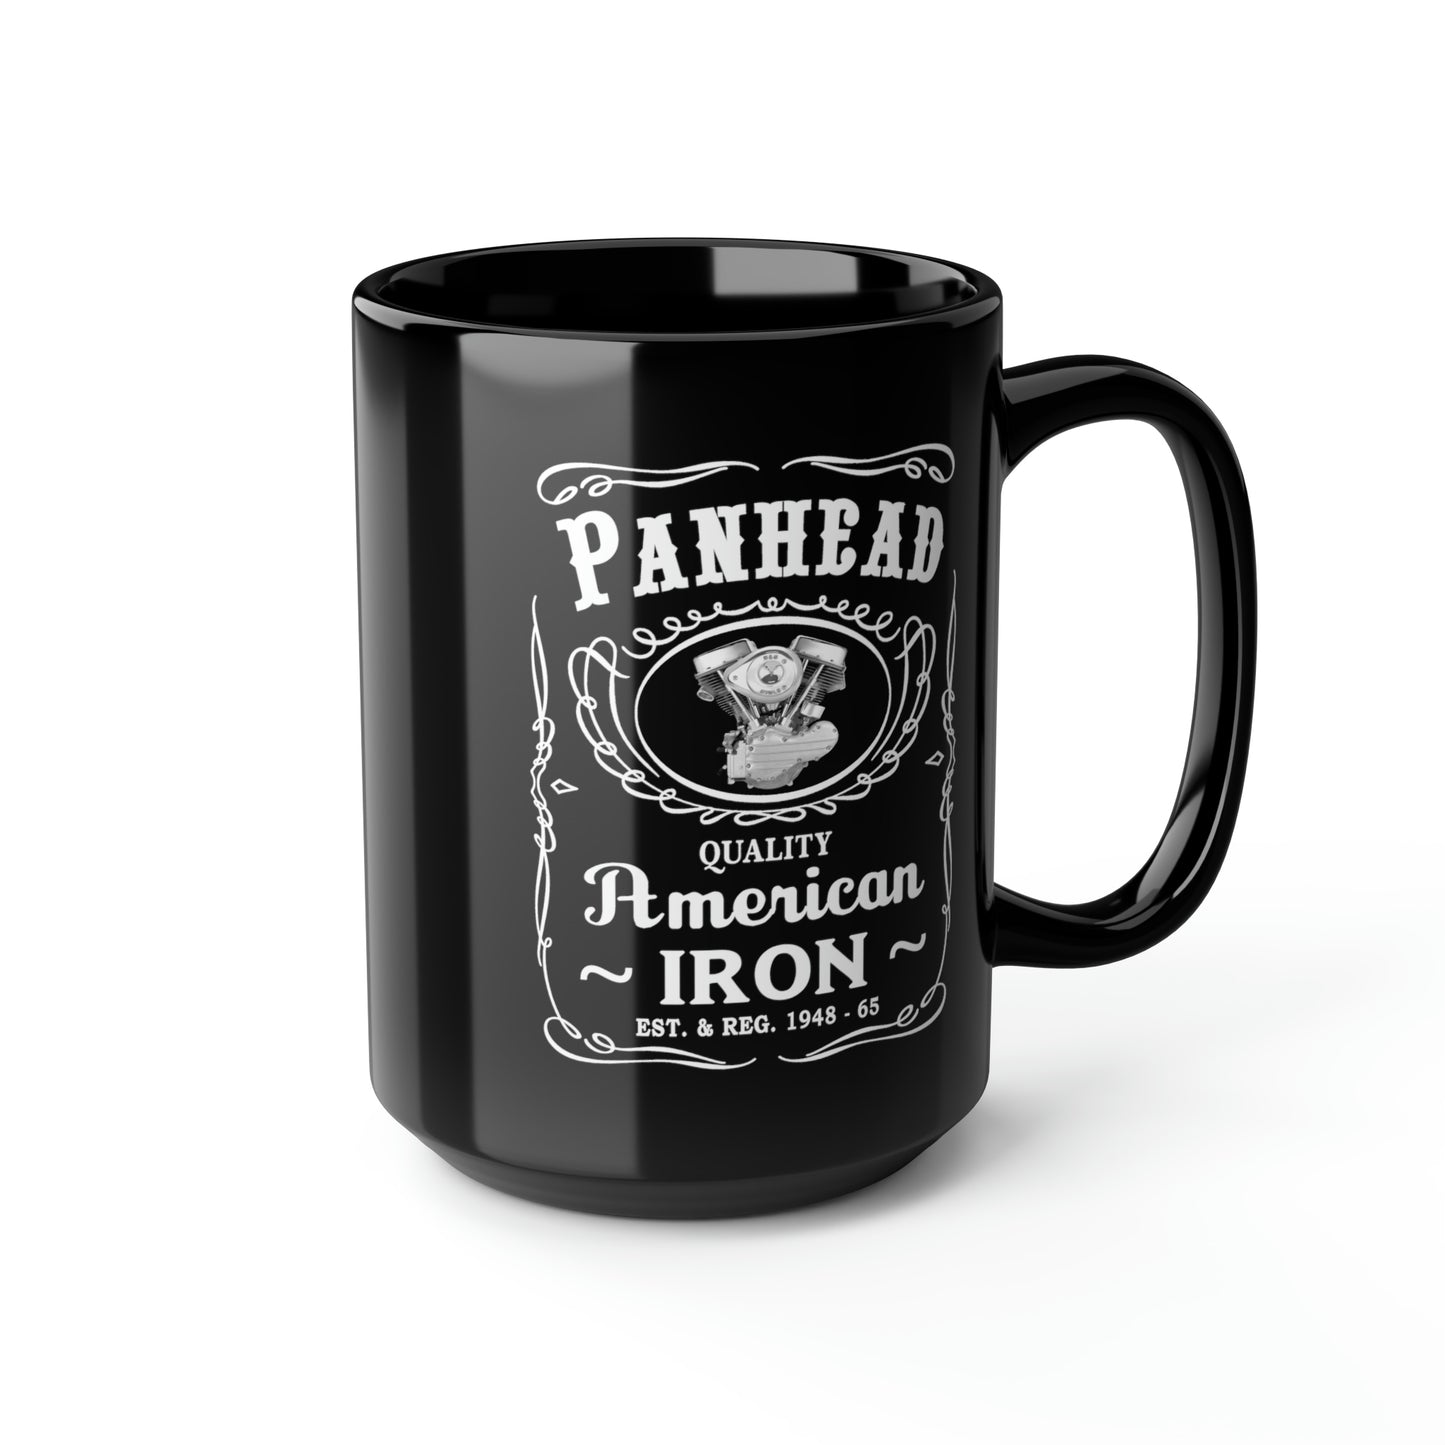 PANHEAD 2 (JD) Black Mug, 15oz